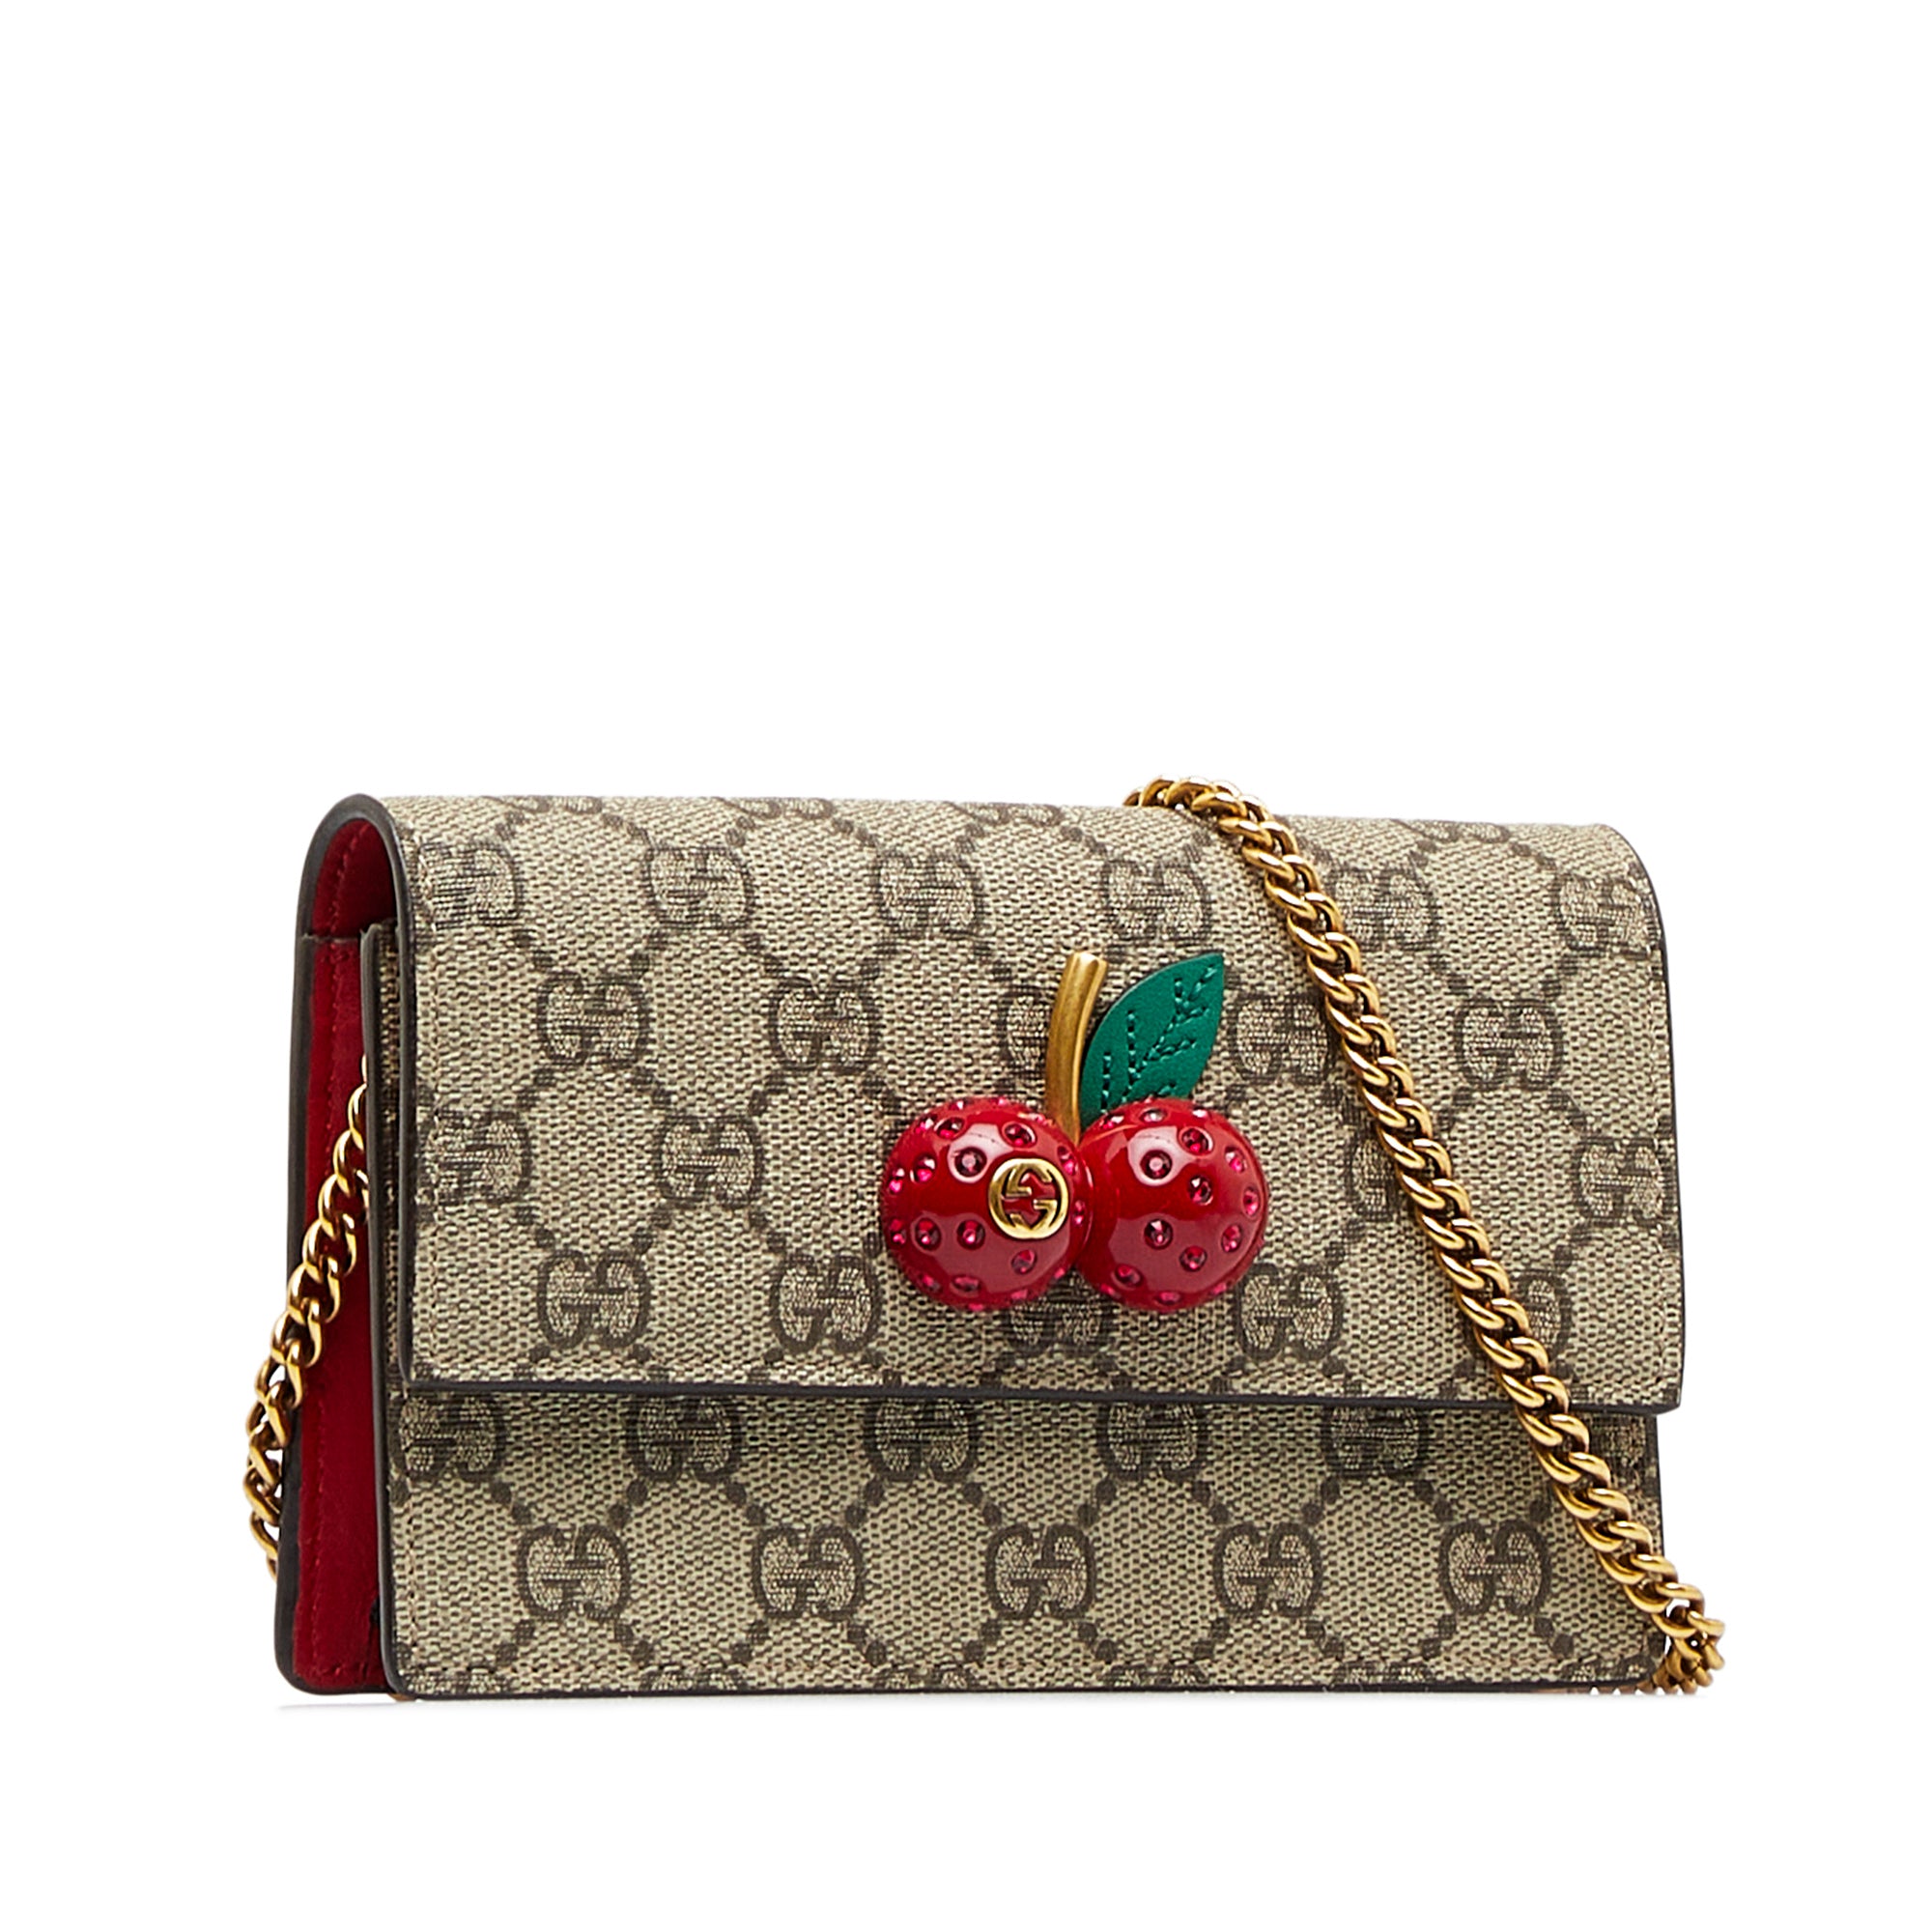 Gucci GG Supreme Mini Cherry bag